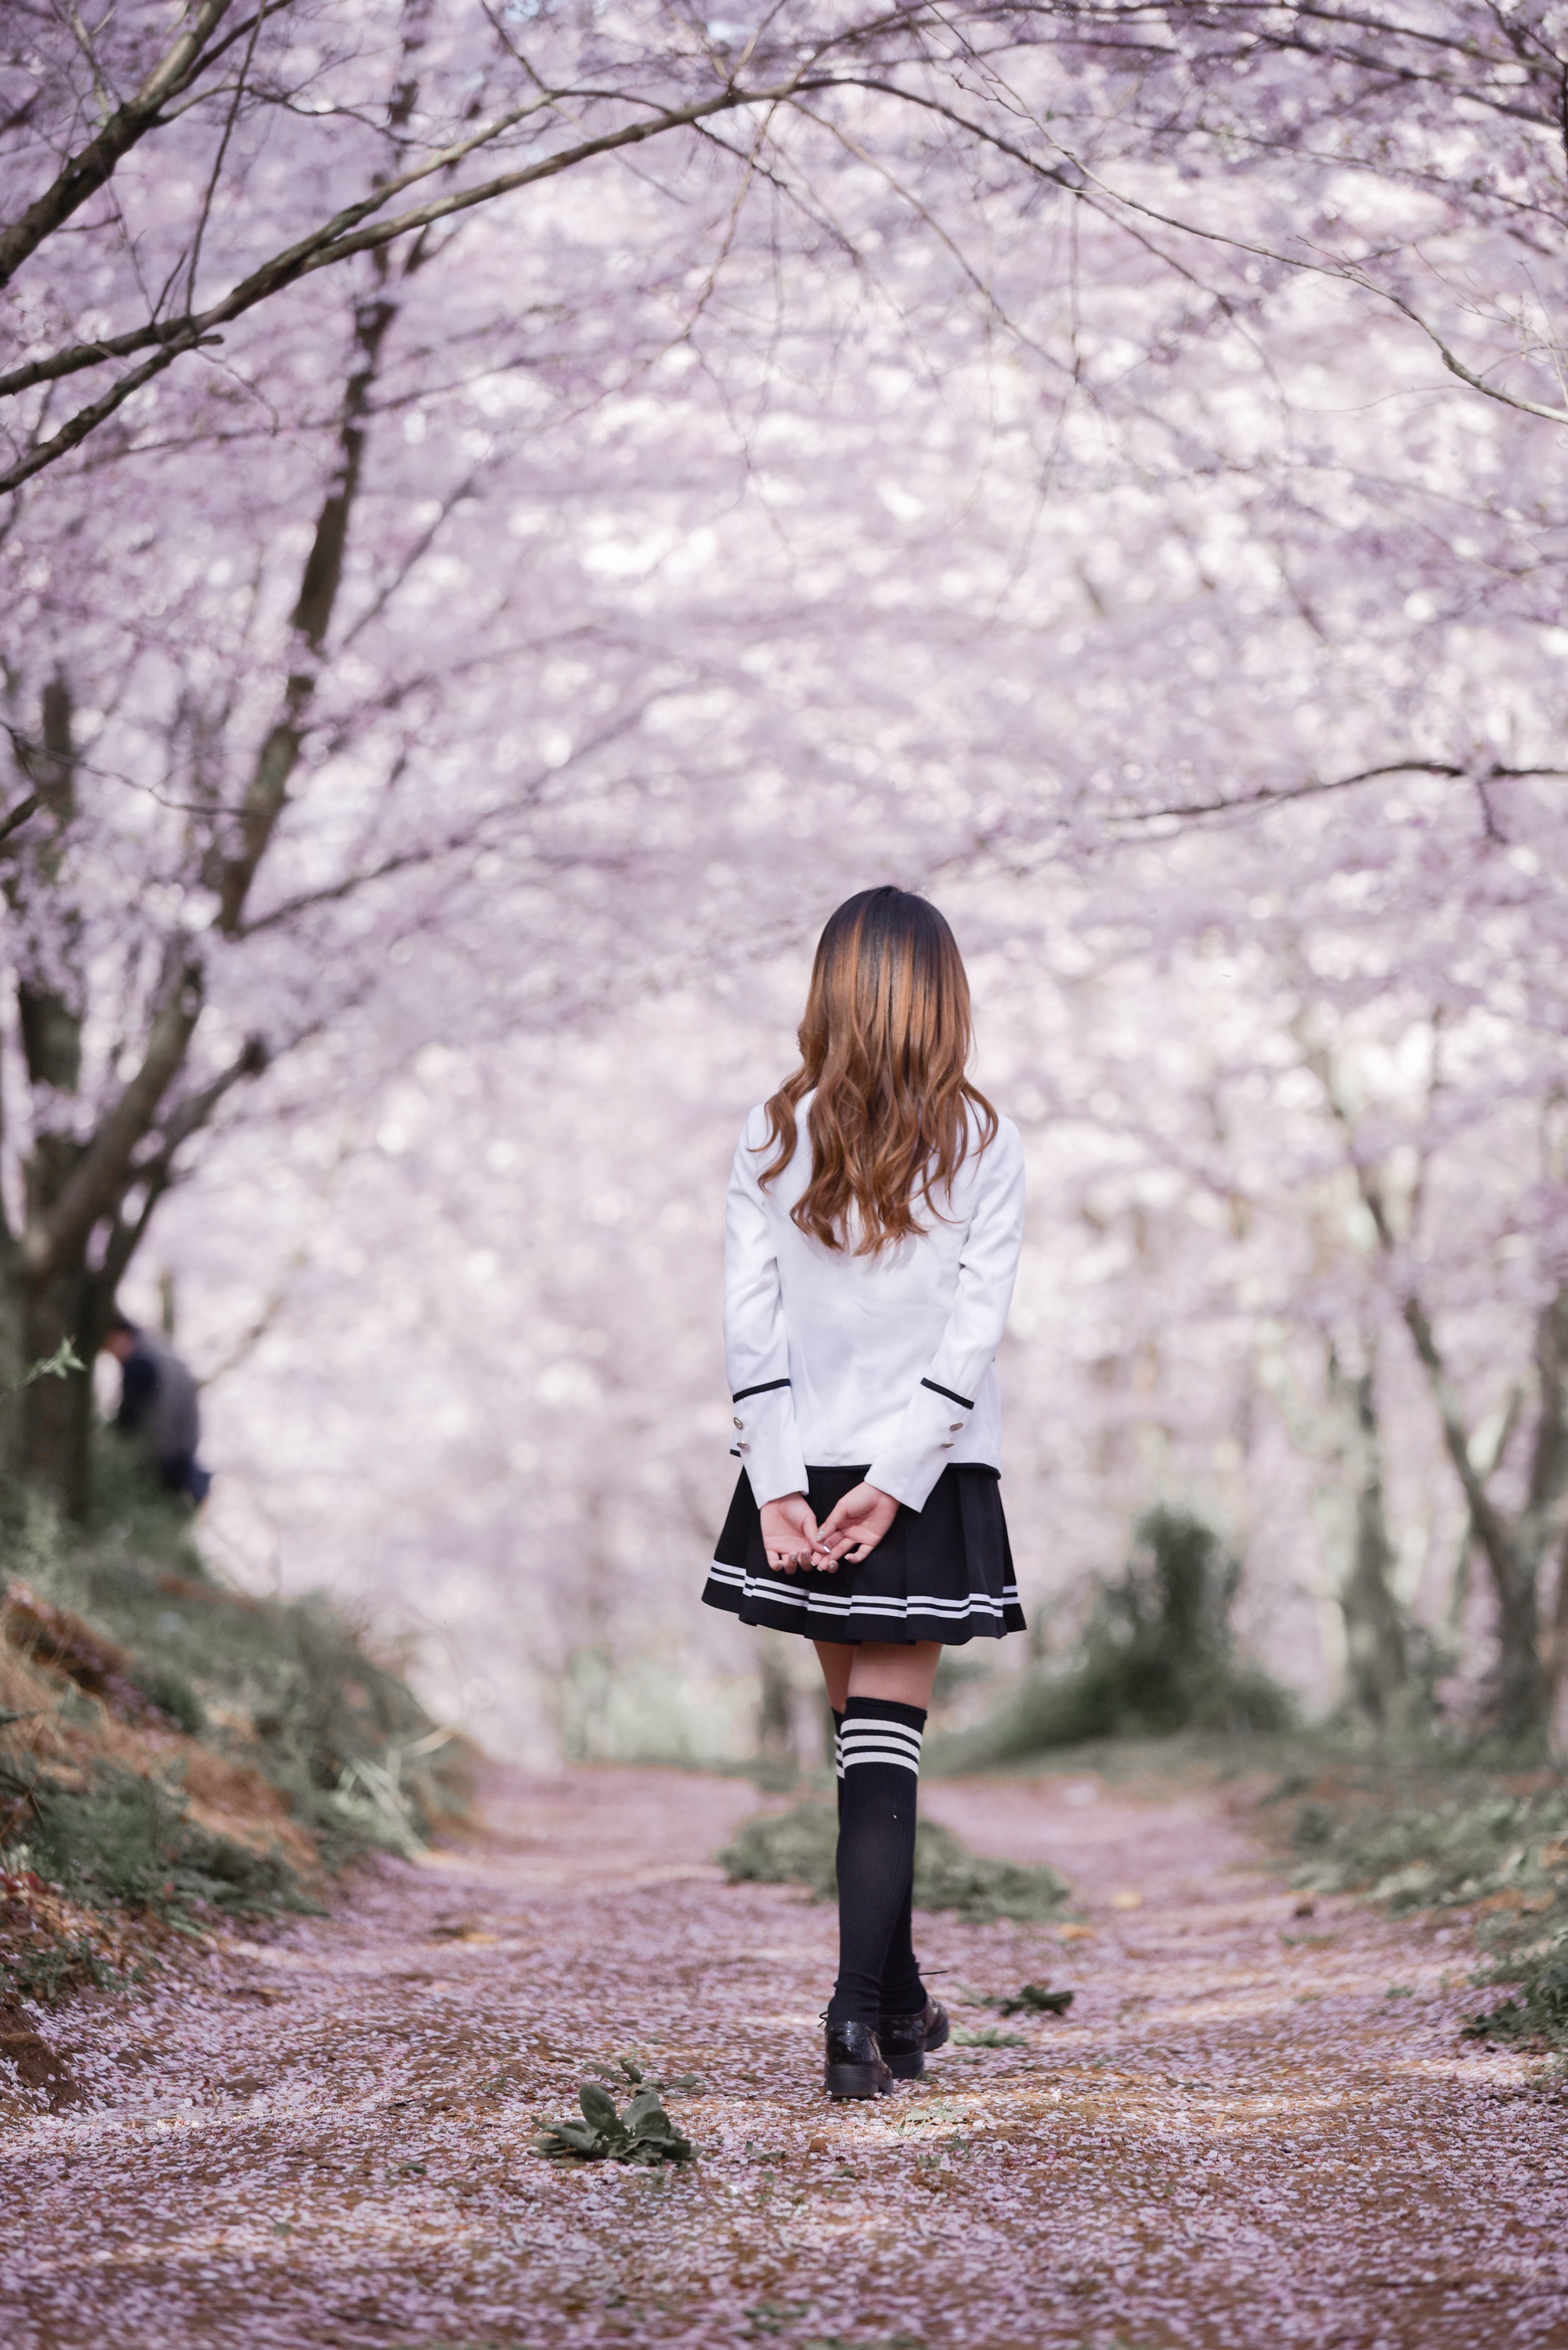 老年人在春天樱花公园散步的图片 - 免费可商用图片 - cc0.cn